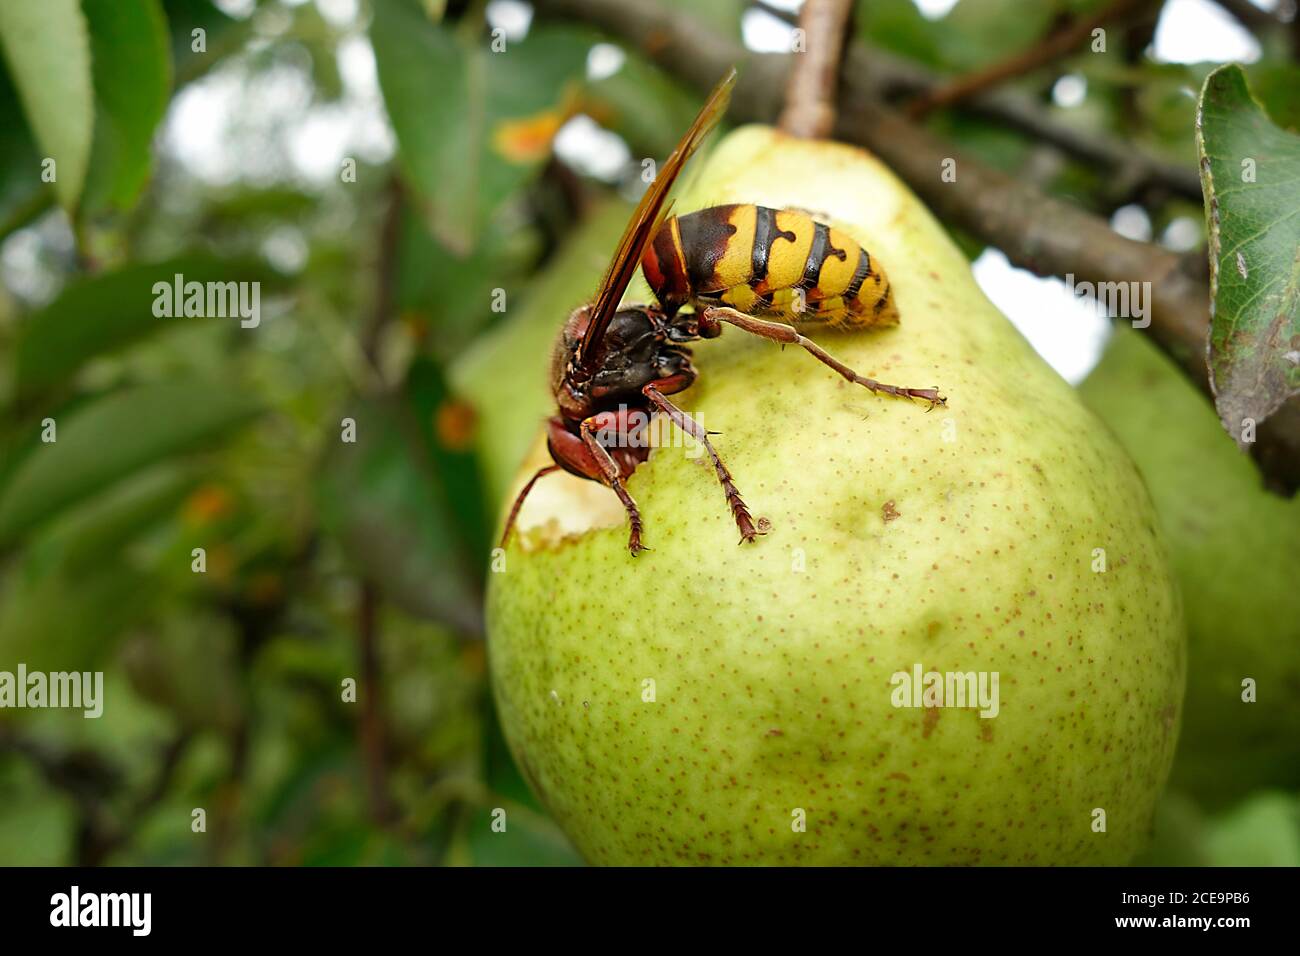 El cuerno europeo (vespa Crabro) se alimenta de la pera madura. Foto de stock